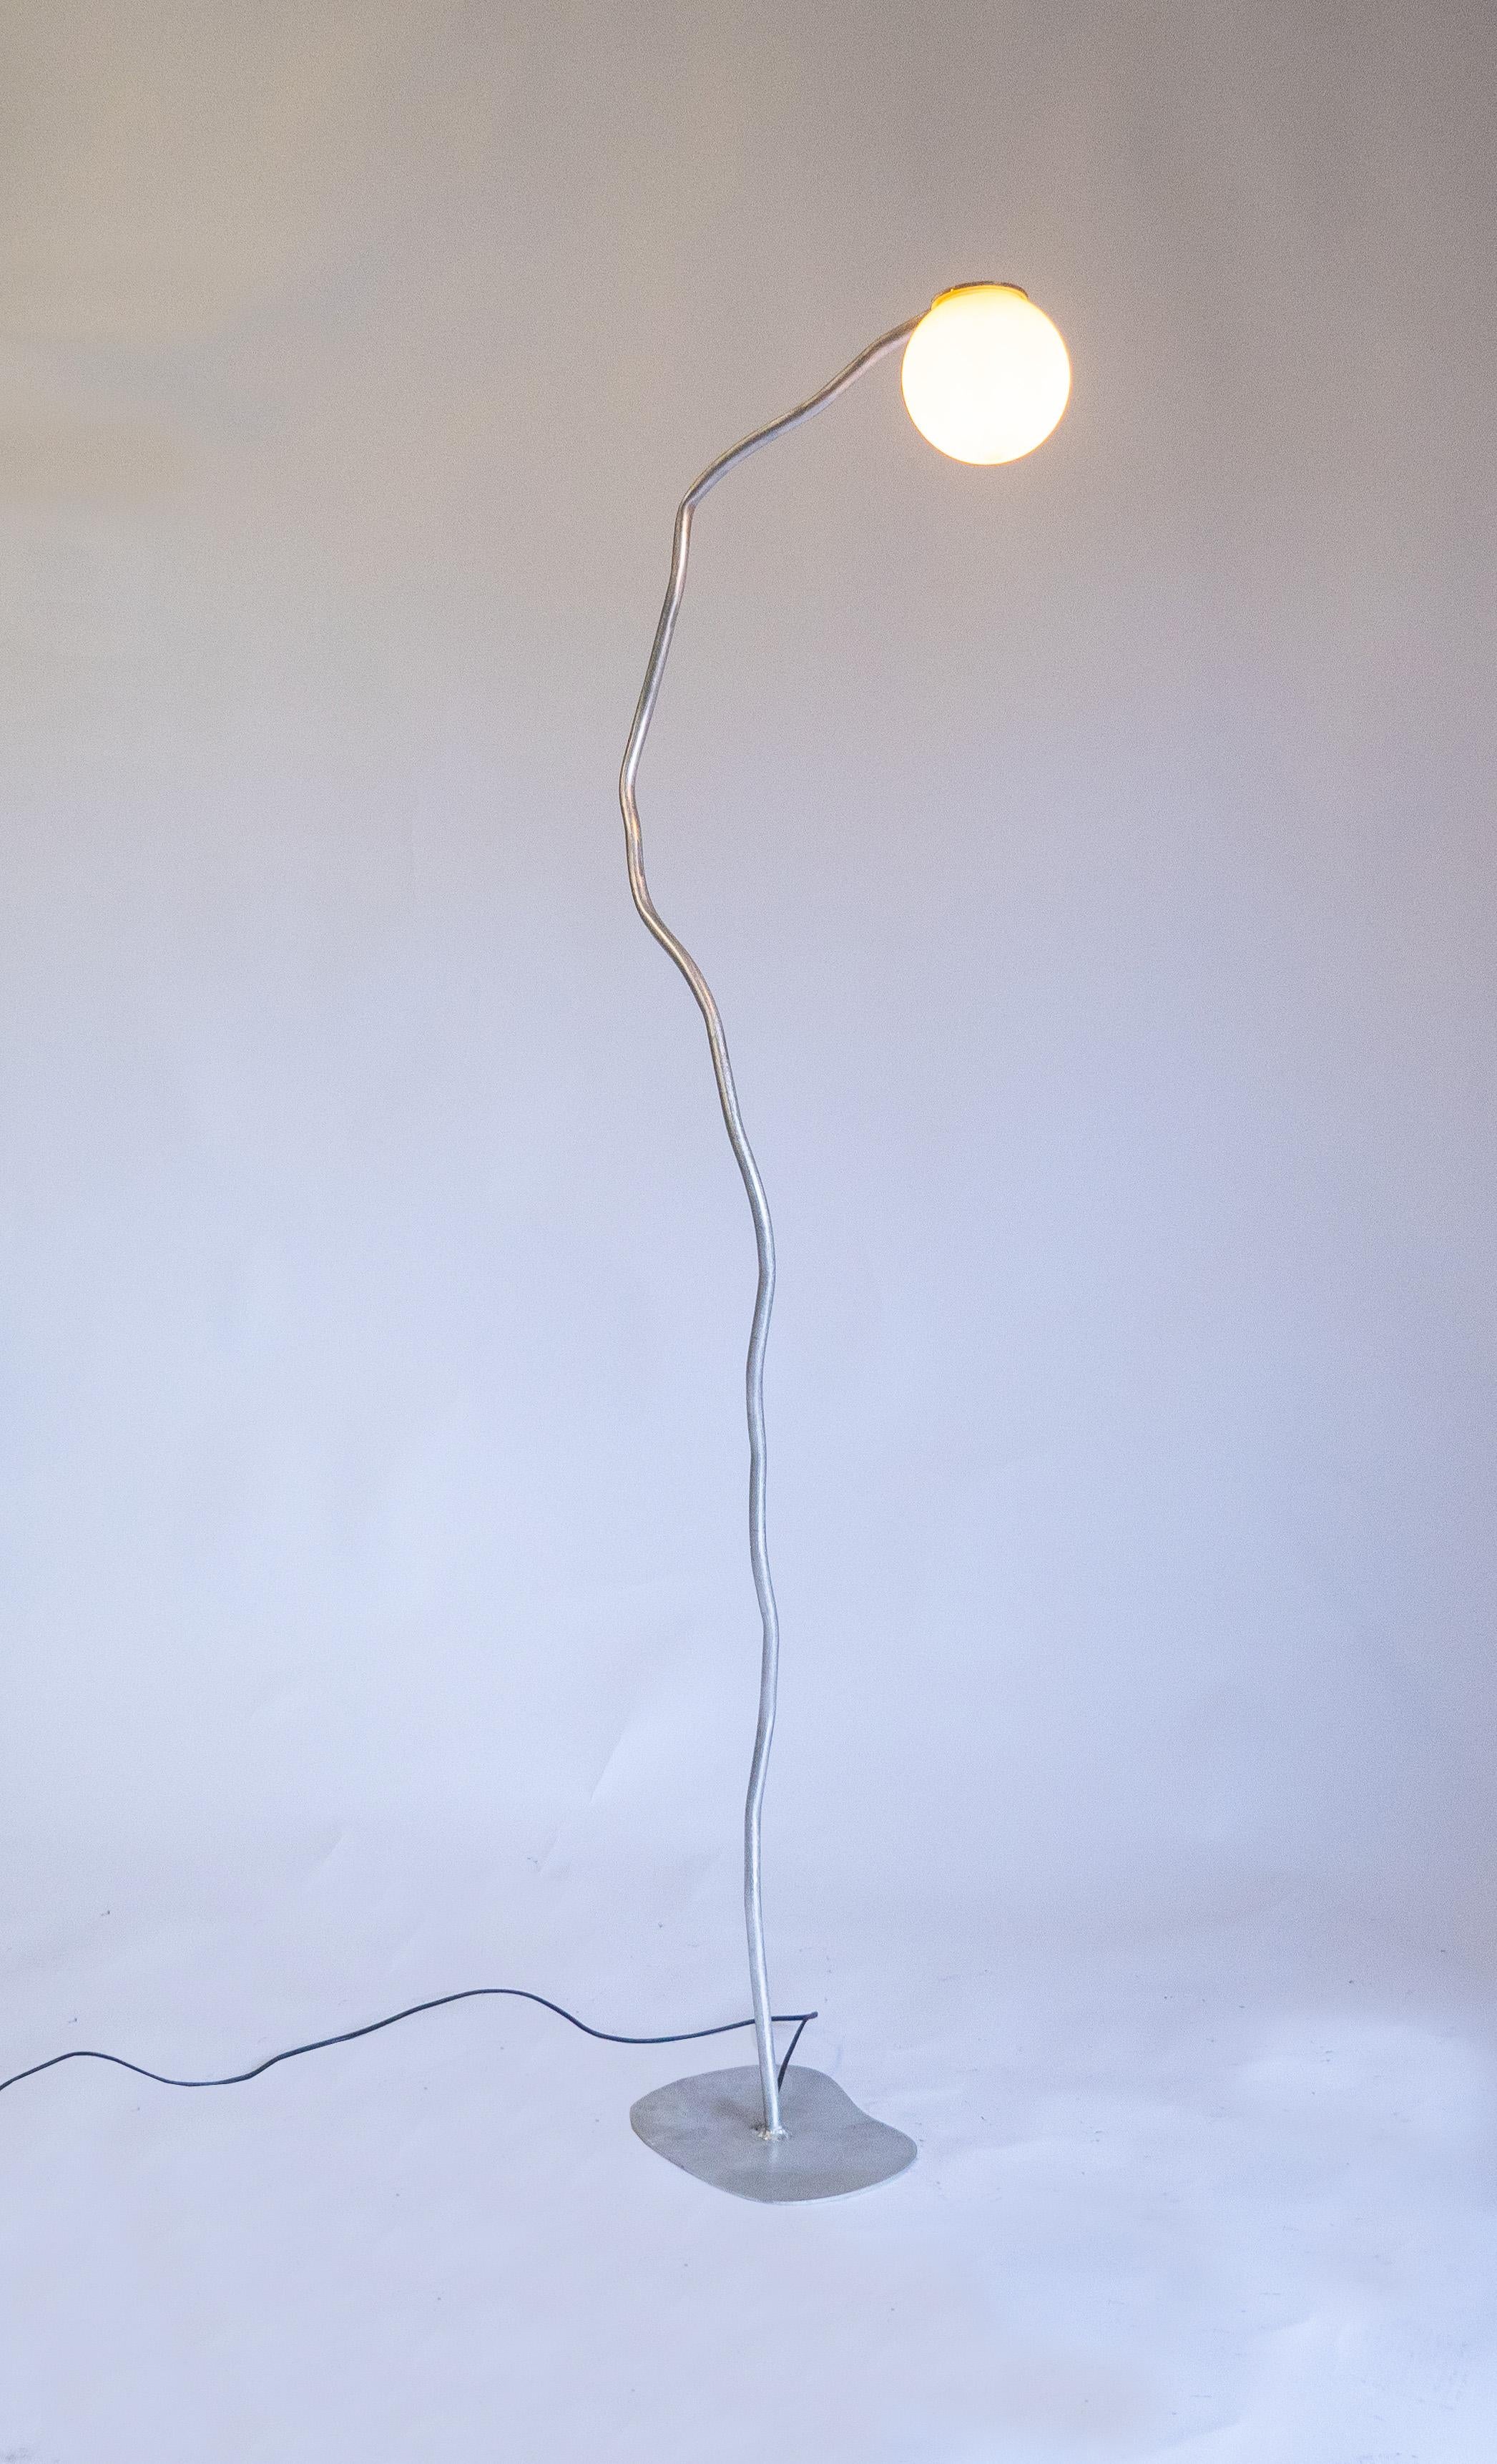 Cette lampe de forme libre est une nouvelle pièce unique de Six Dots Design.

La forme organique de la lampe est destinée à faire entrer la sensation de l'environnement naturel dans la maison. Le designer souhaite que les pièces créent une